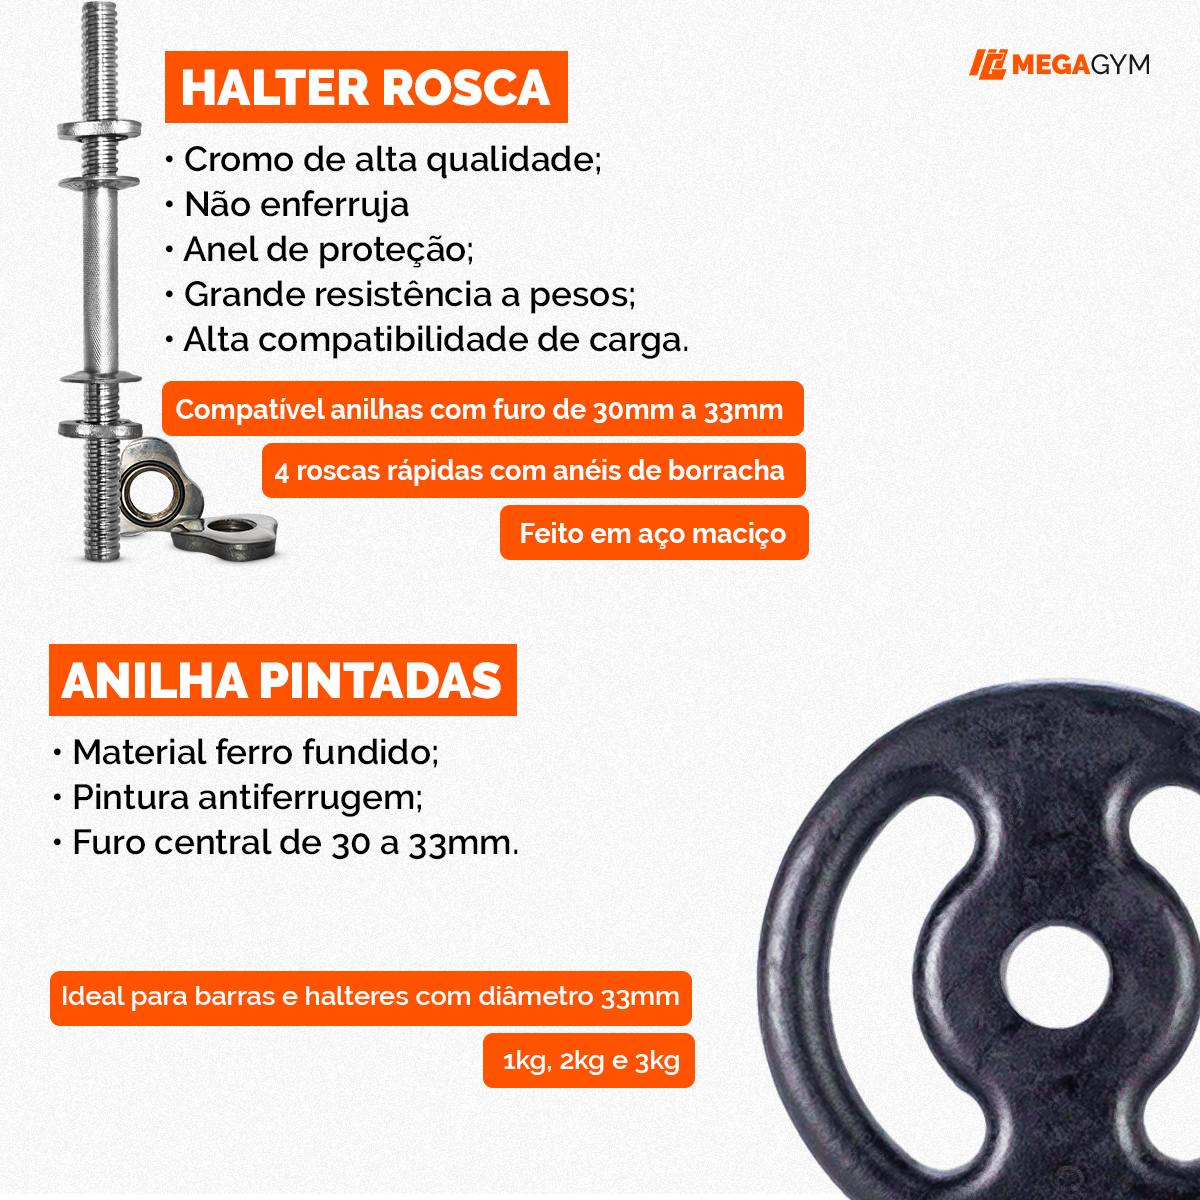 Kit Musculação Com Par Halteres Rosca 40cm + 32kg Anilhas Pintadas